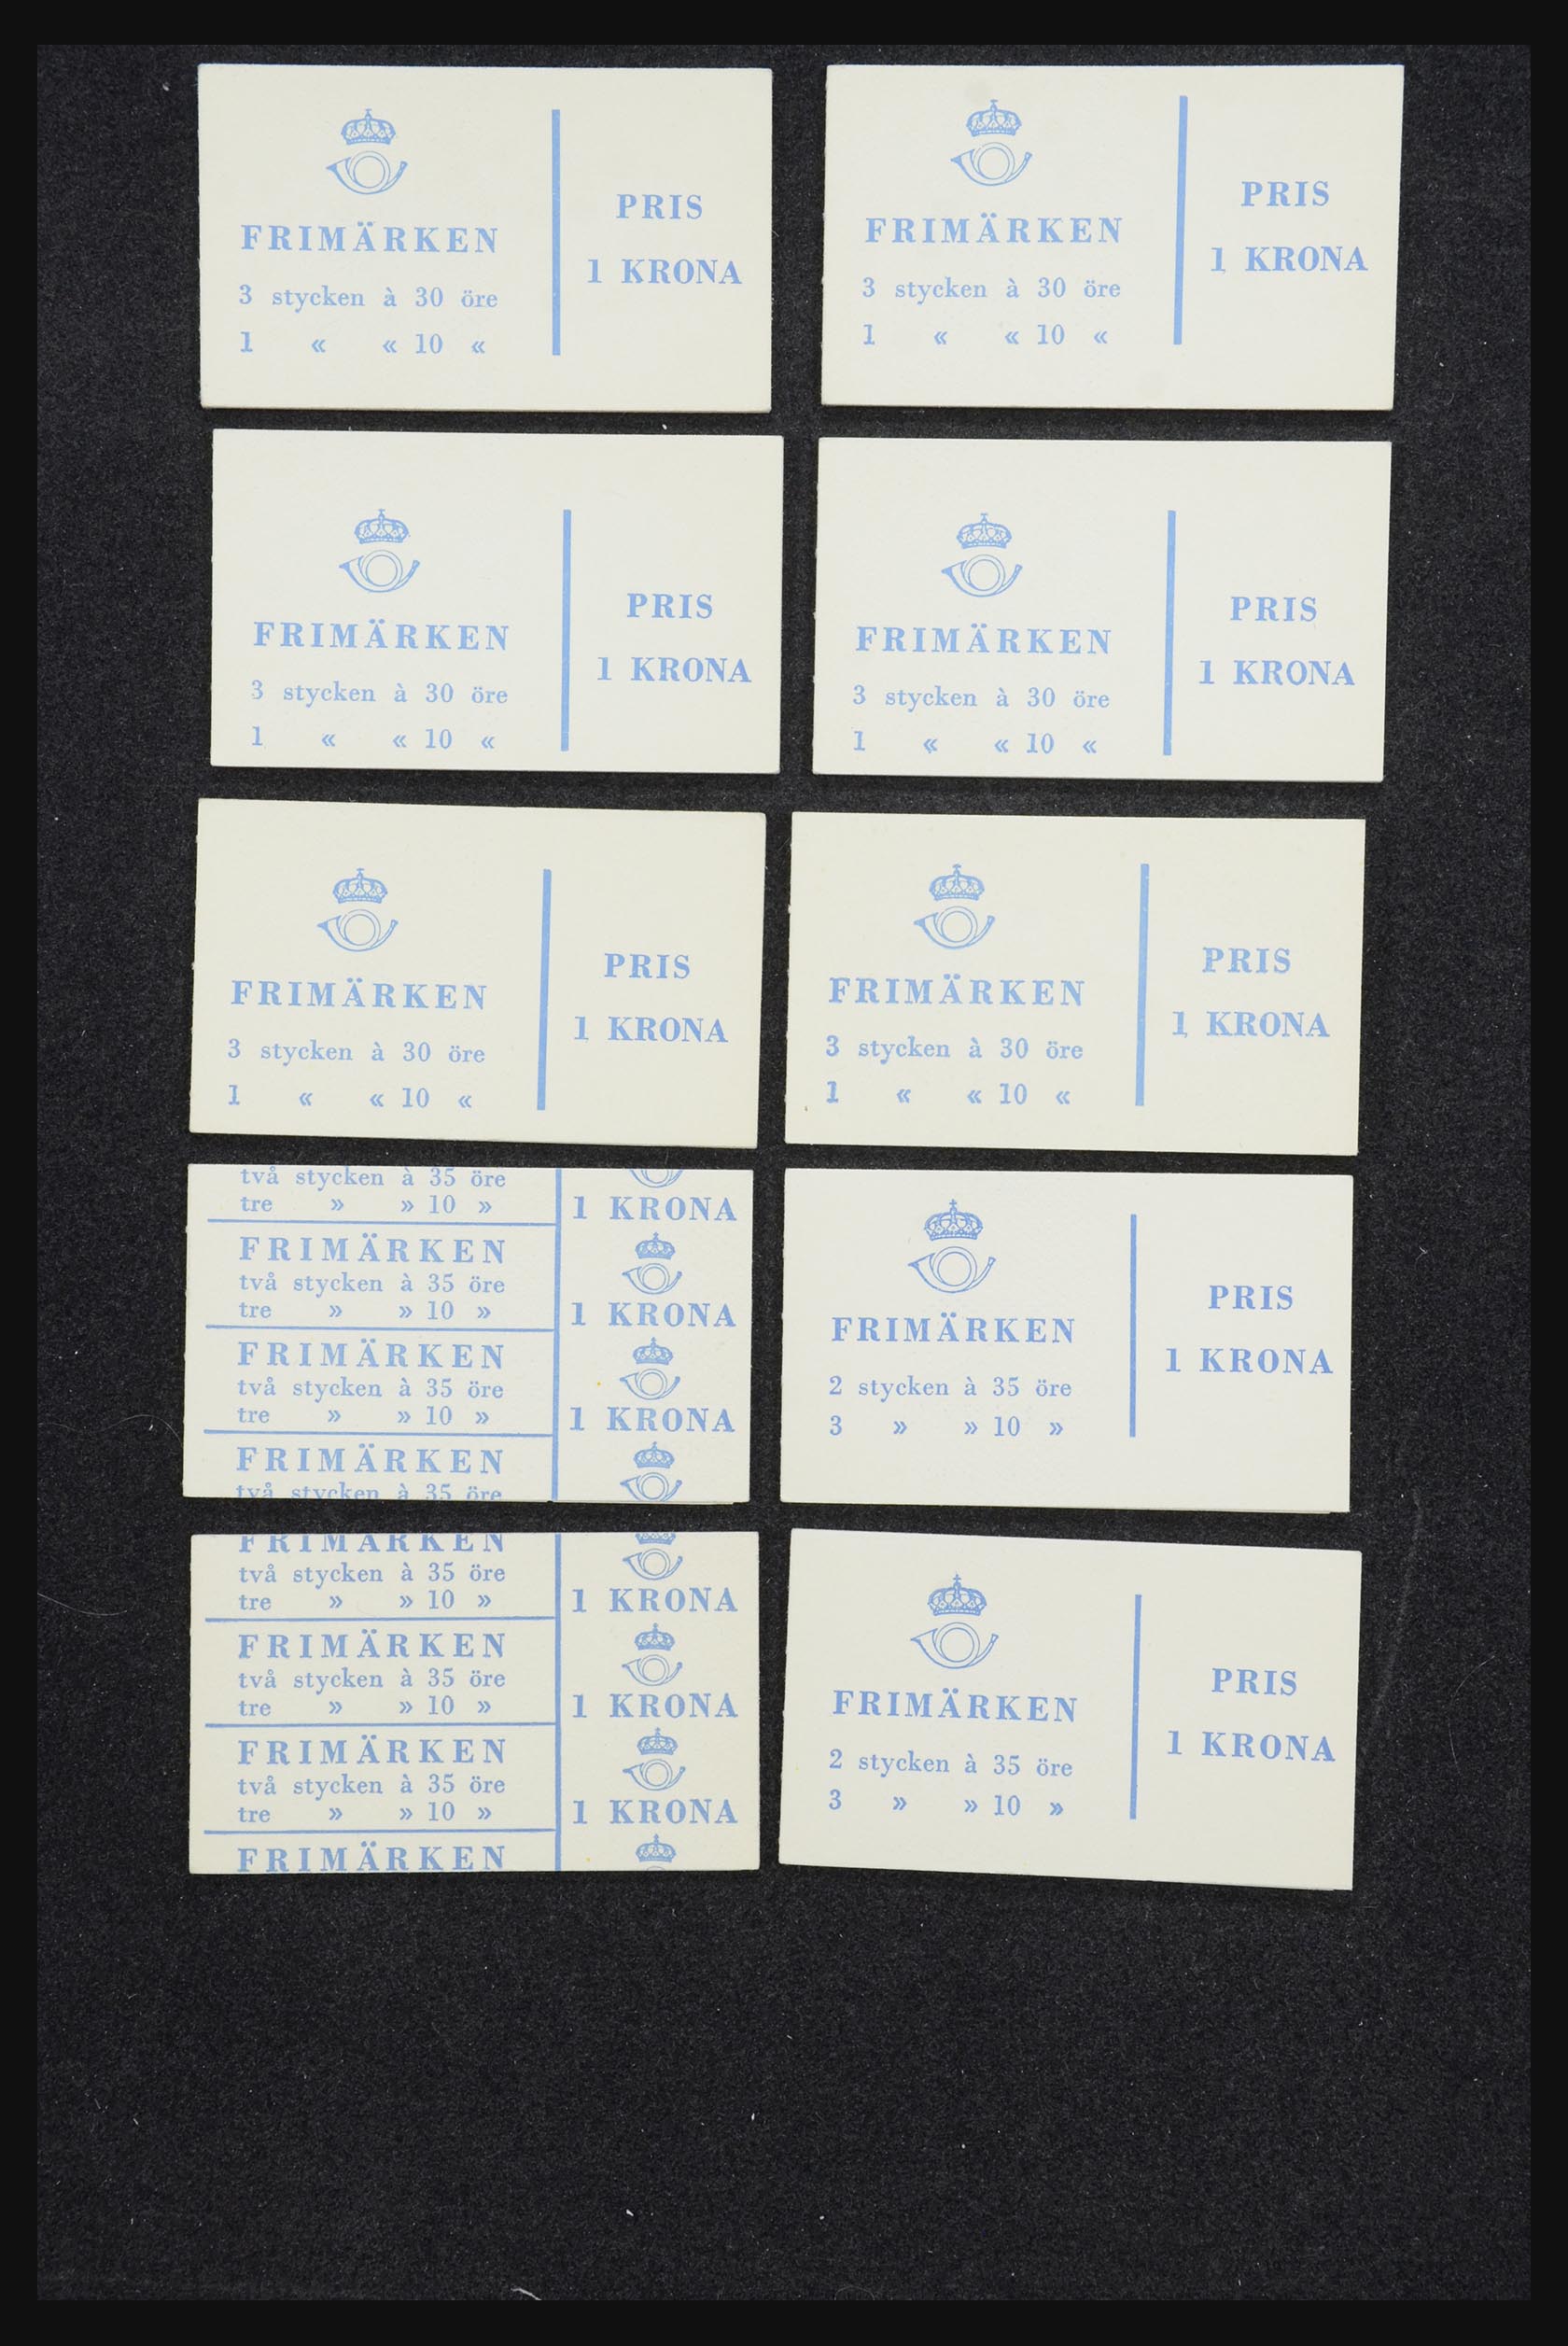 32026 055 - 32026 Sweden stampbooklets 1949-1990.